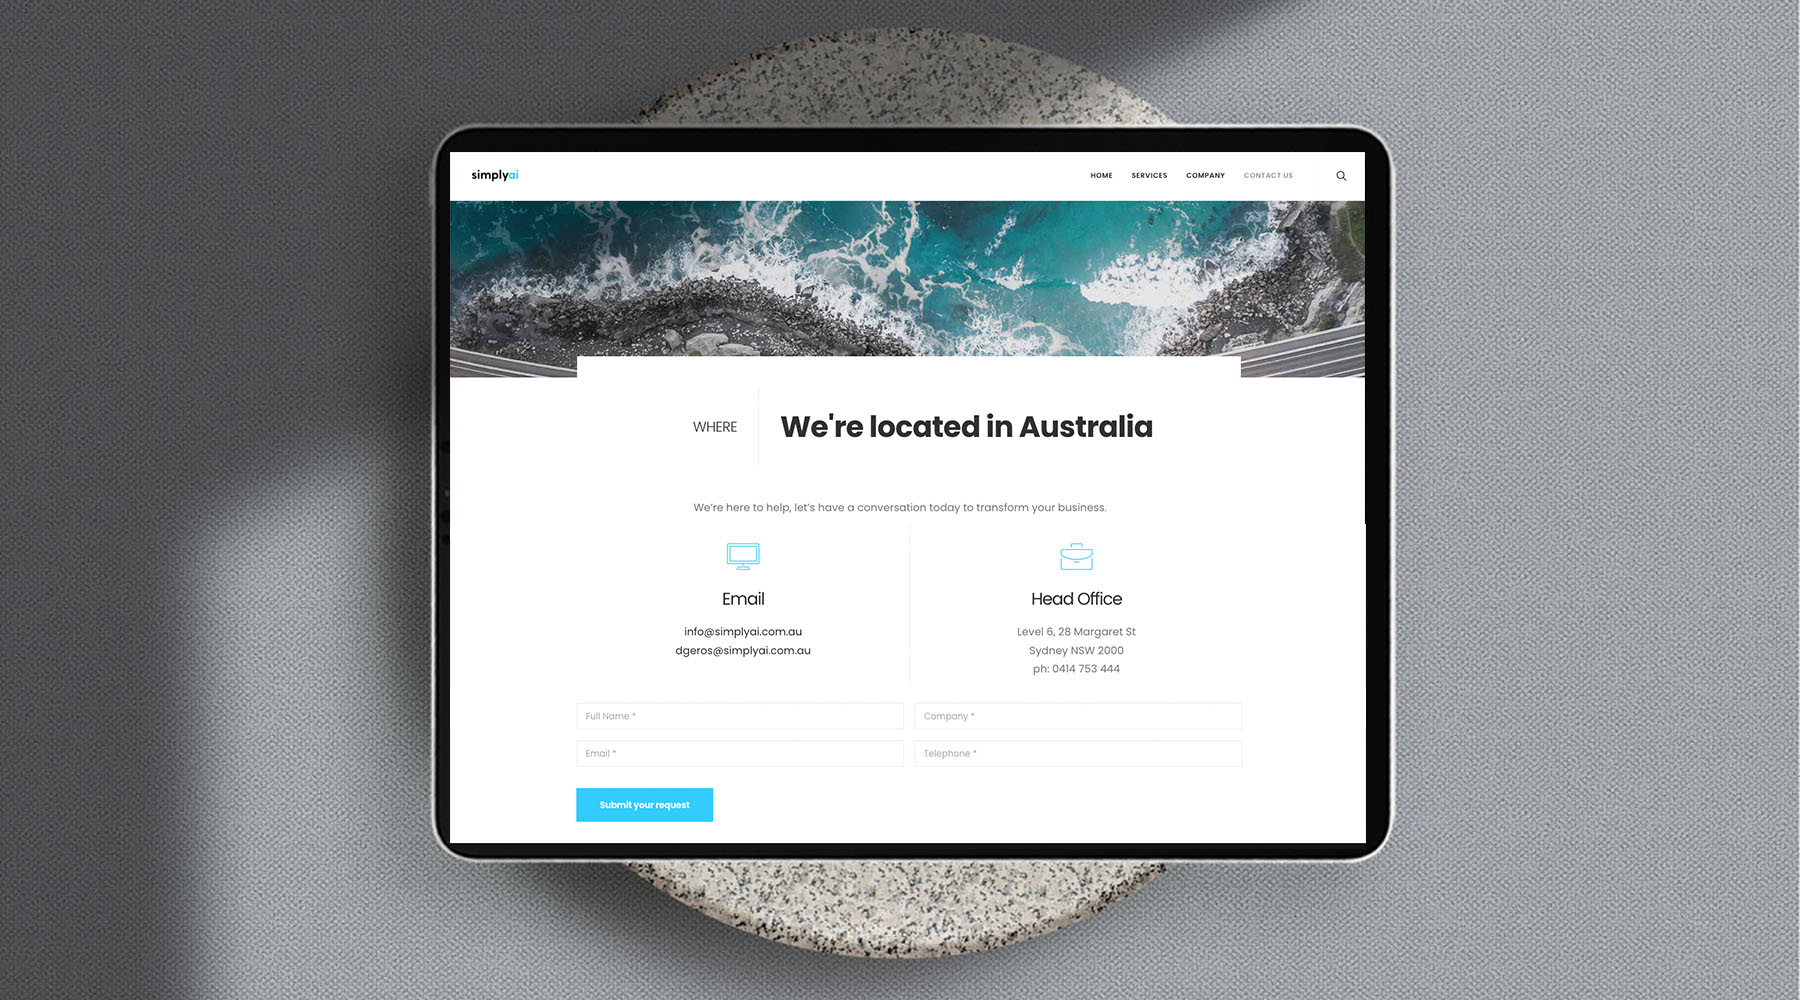 Sea Salt Web Design Sydney SimplyAI corporate website Ipad